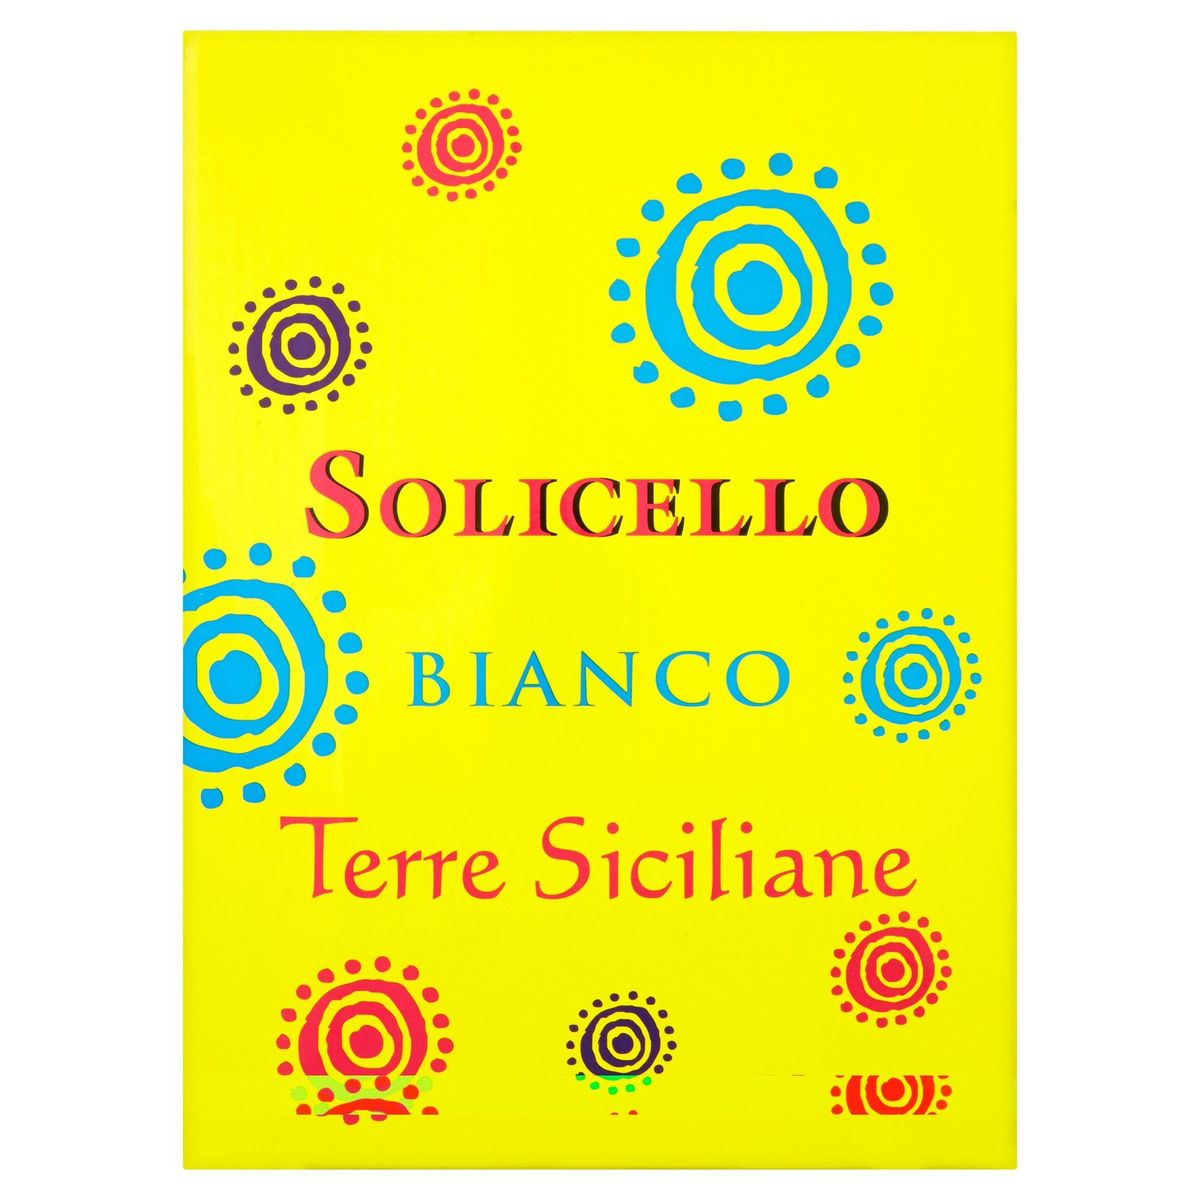 Solicello Bianco Terre Siciliane 3000 ml